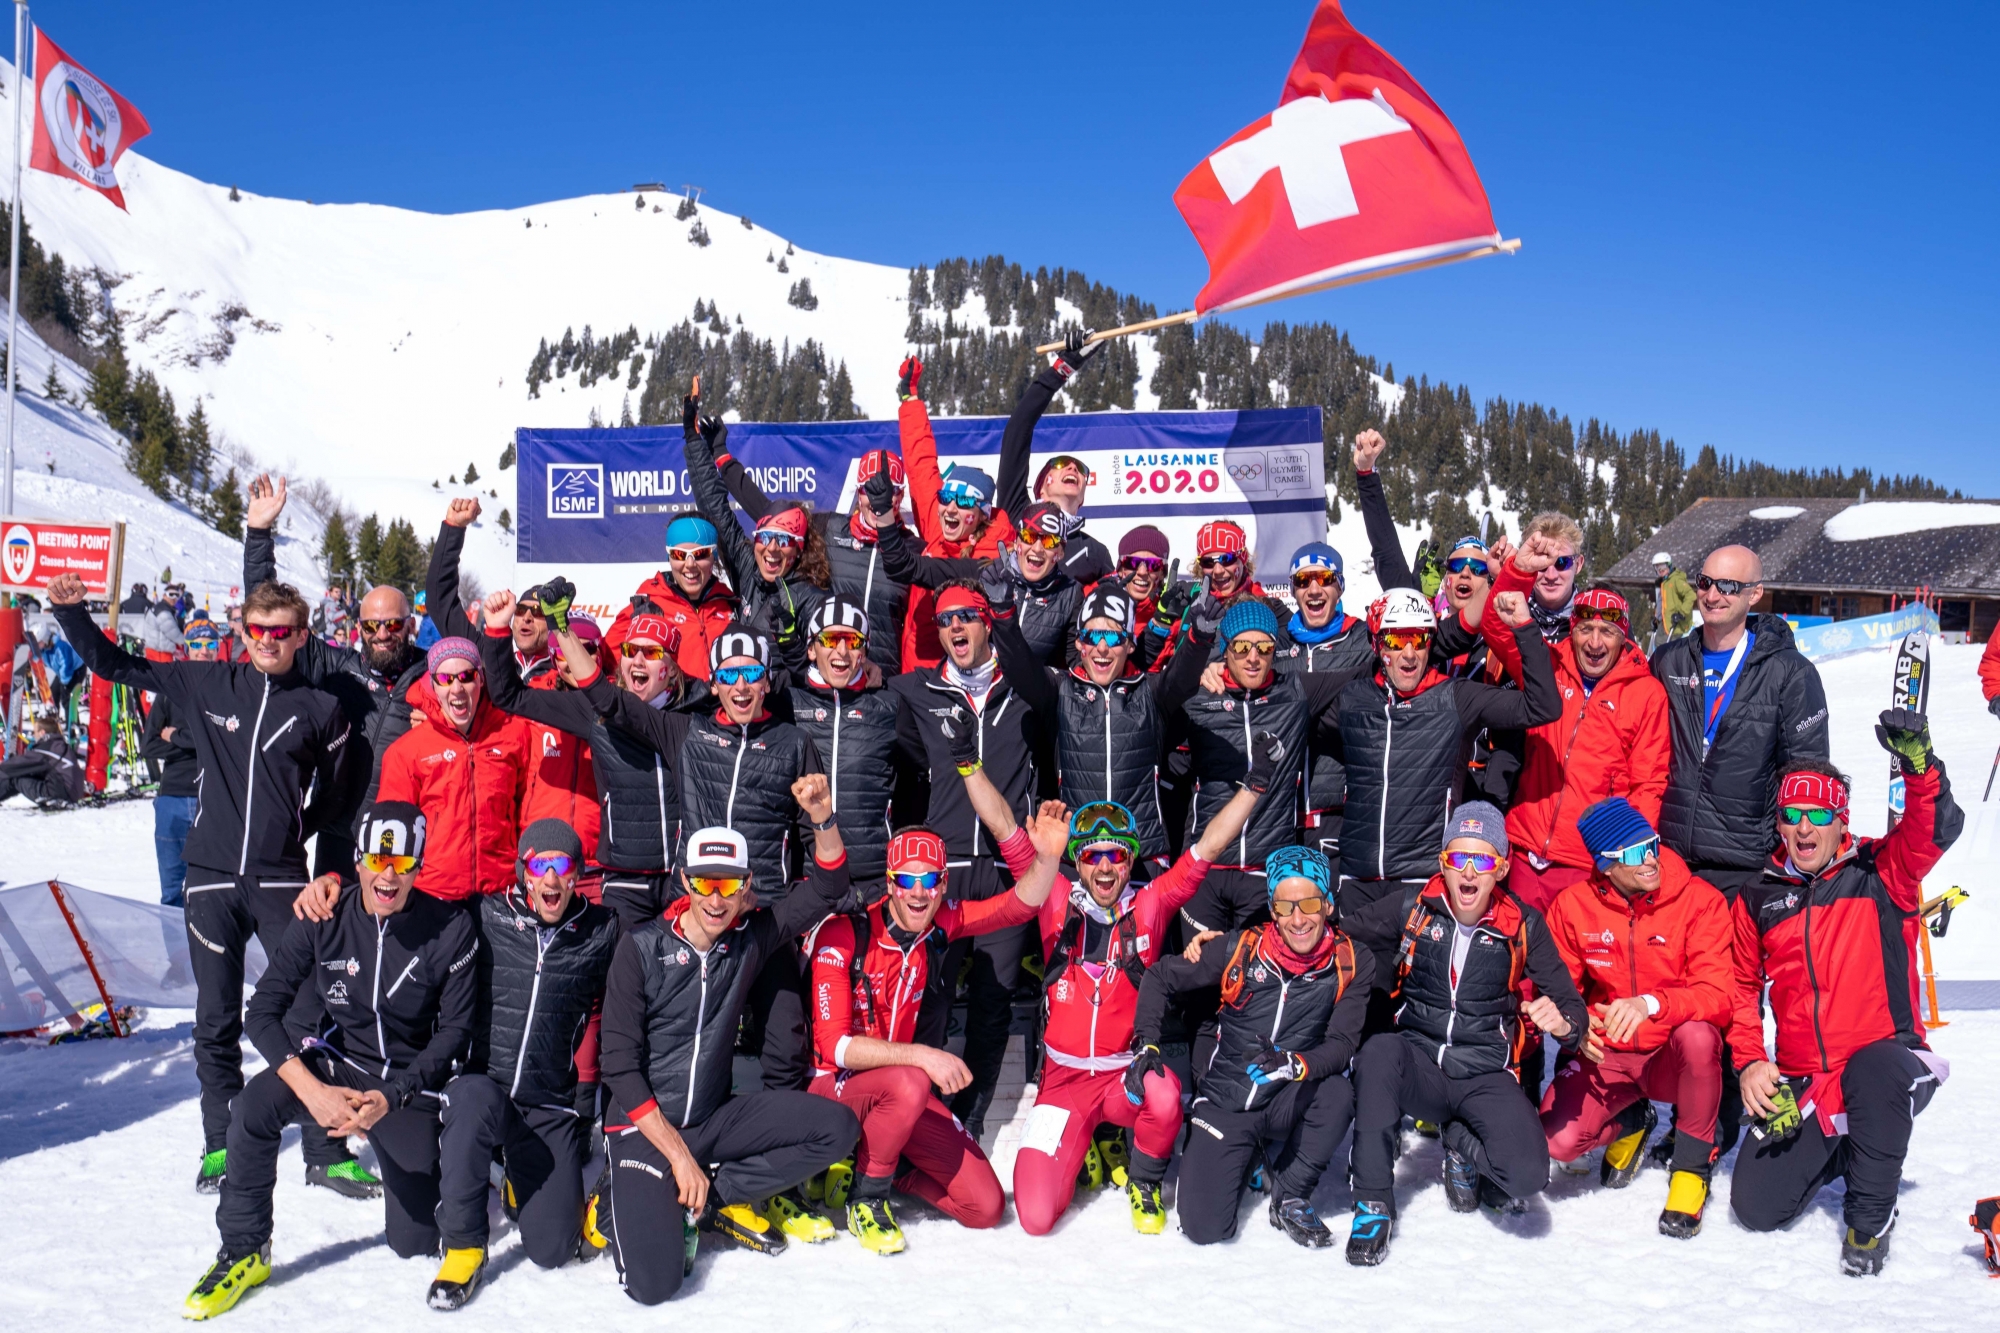 L'équipe de Suisse dans sa globalité peut être très satisfaite de cette semaine. La délégation helvétique termine première au classement des nations.